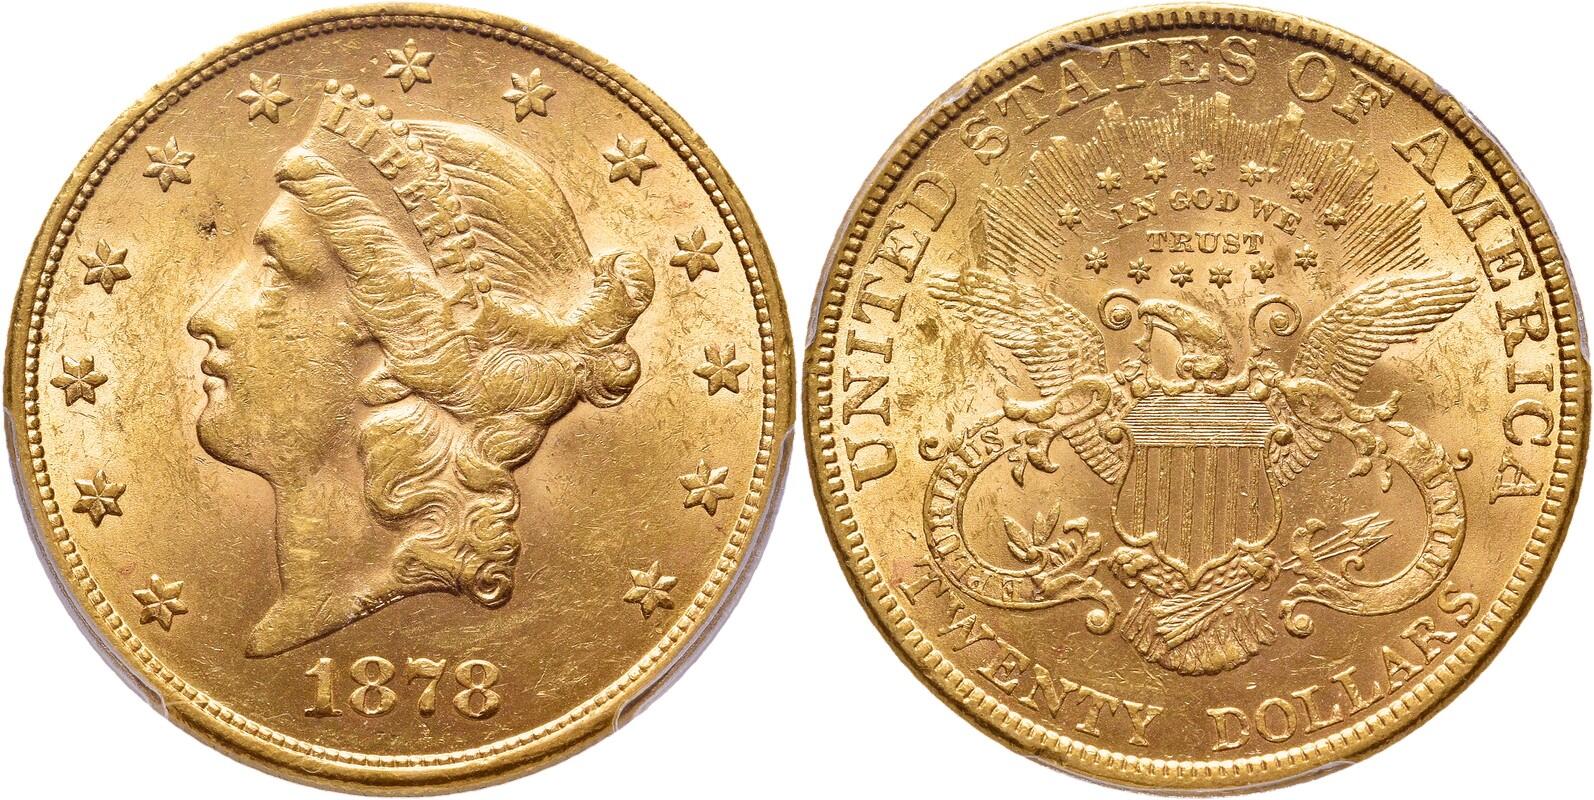  USA 20 Dollars 1878 | NGC MS61 | Liberty Head   